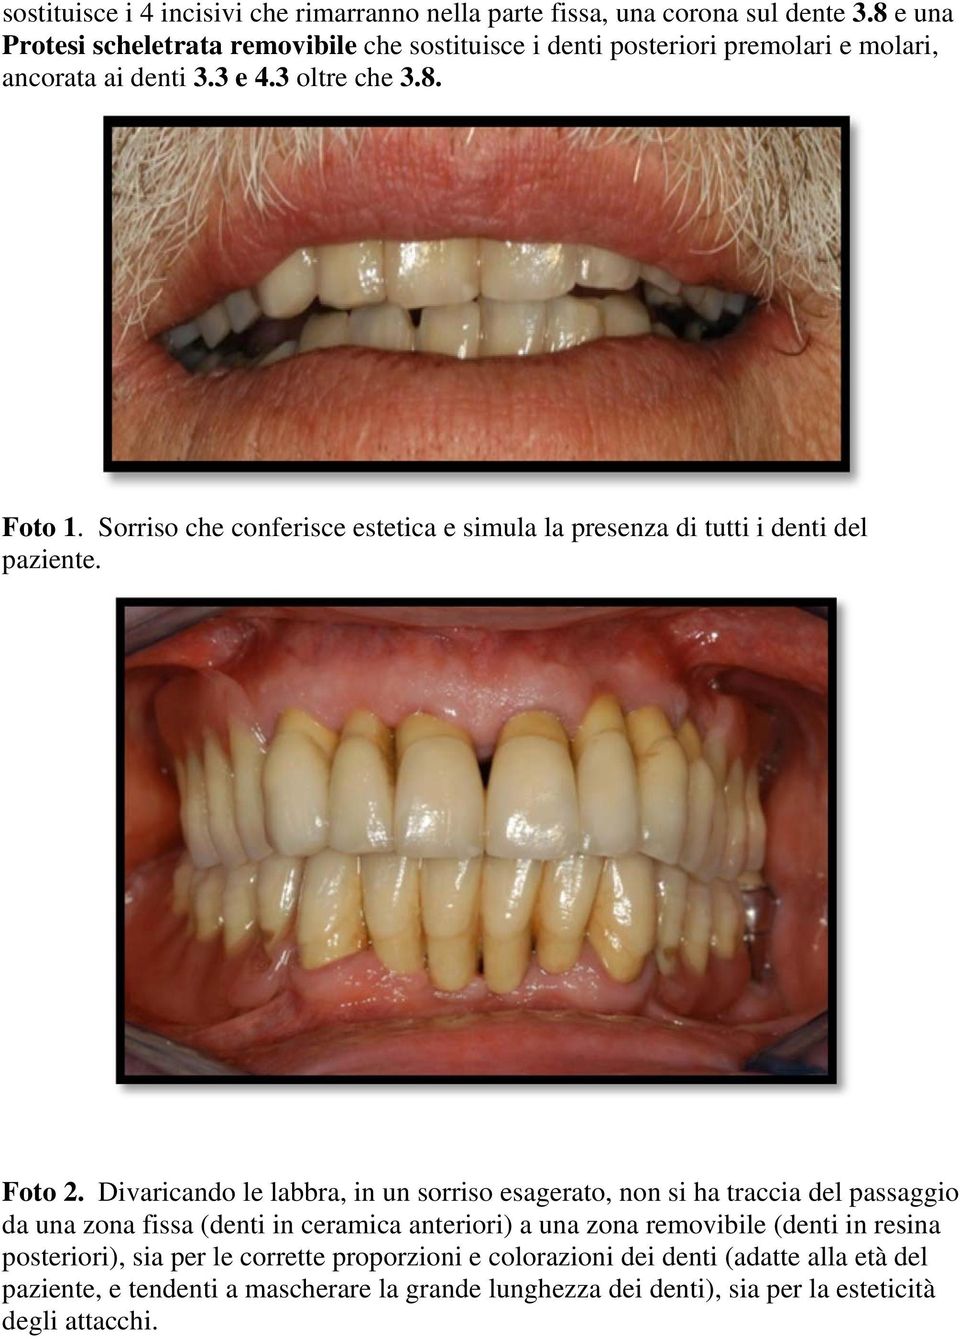 Sorriso che conferisce estetica e simula la presenza di tutti i denti del paziente. Foto 2.